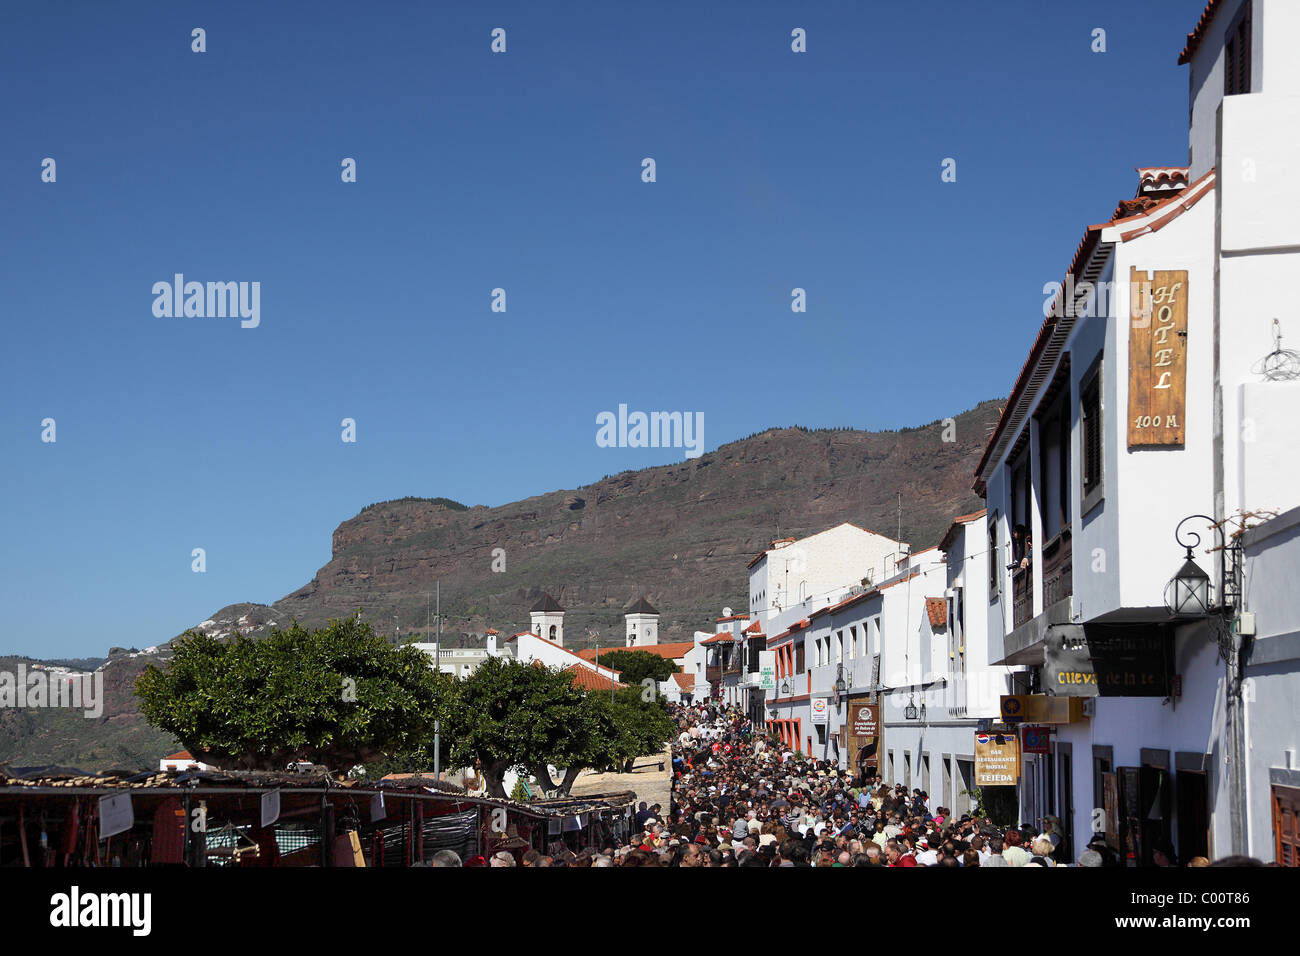 Almond Festival in Tejeda, Gran Canaria Stock Photo